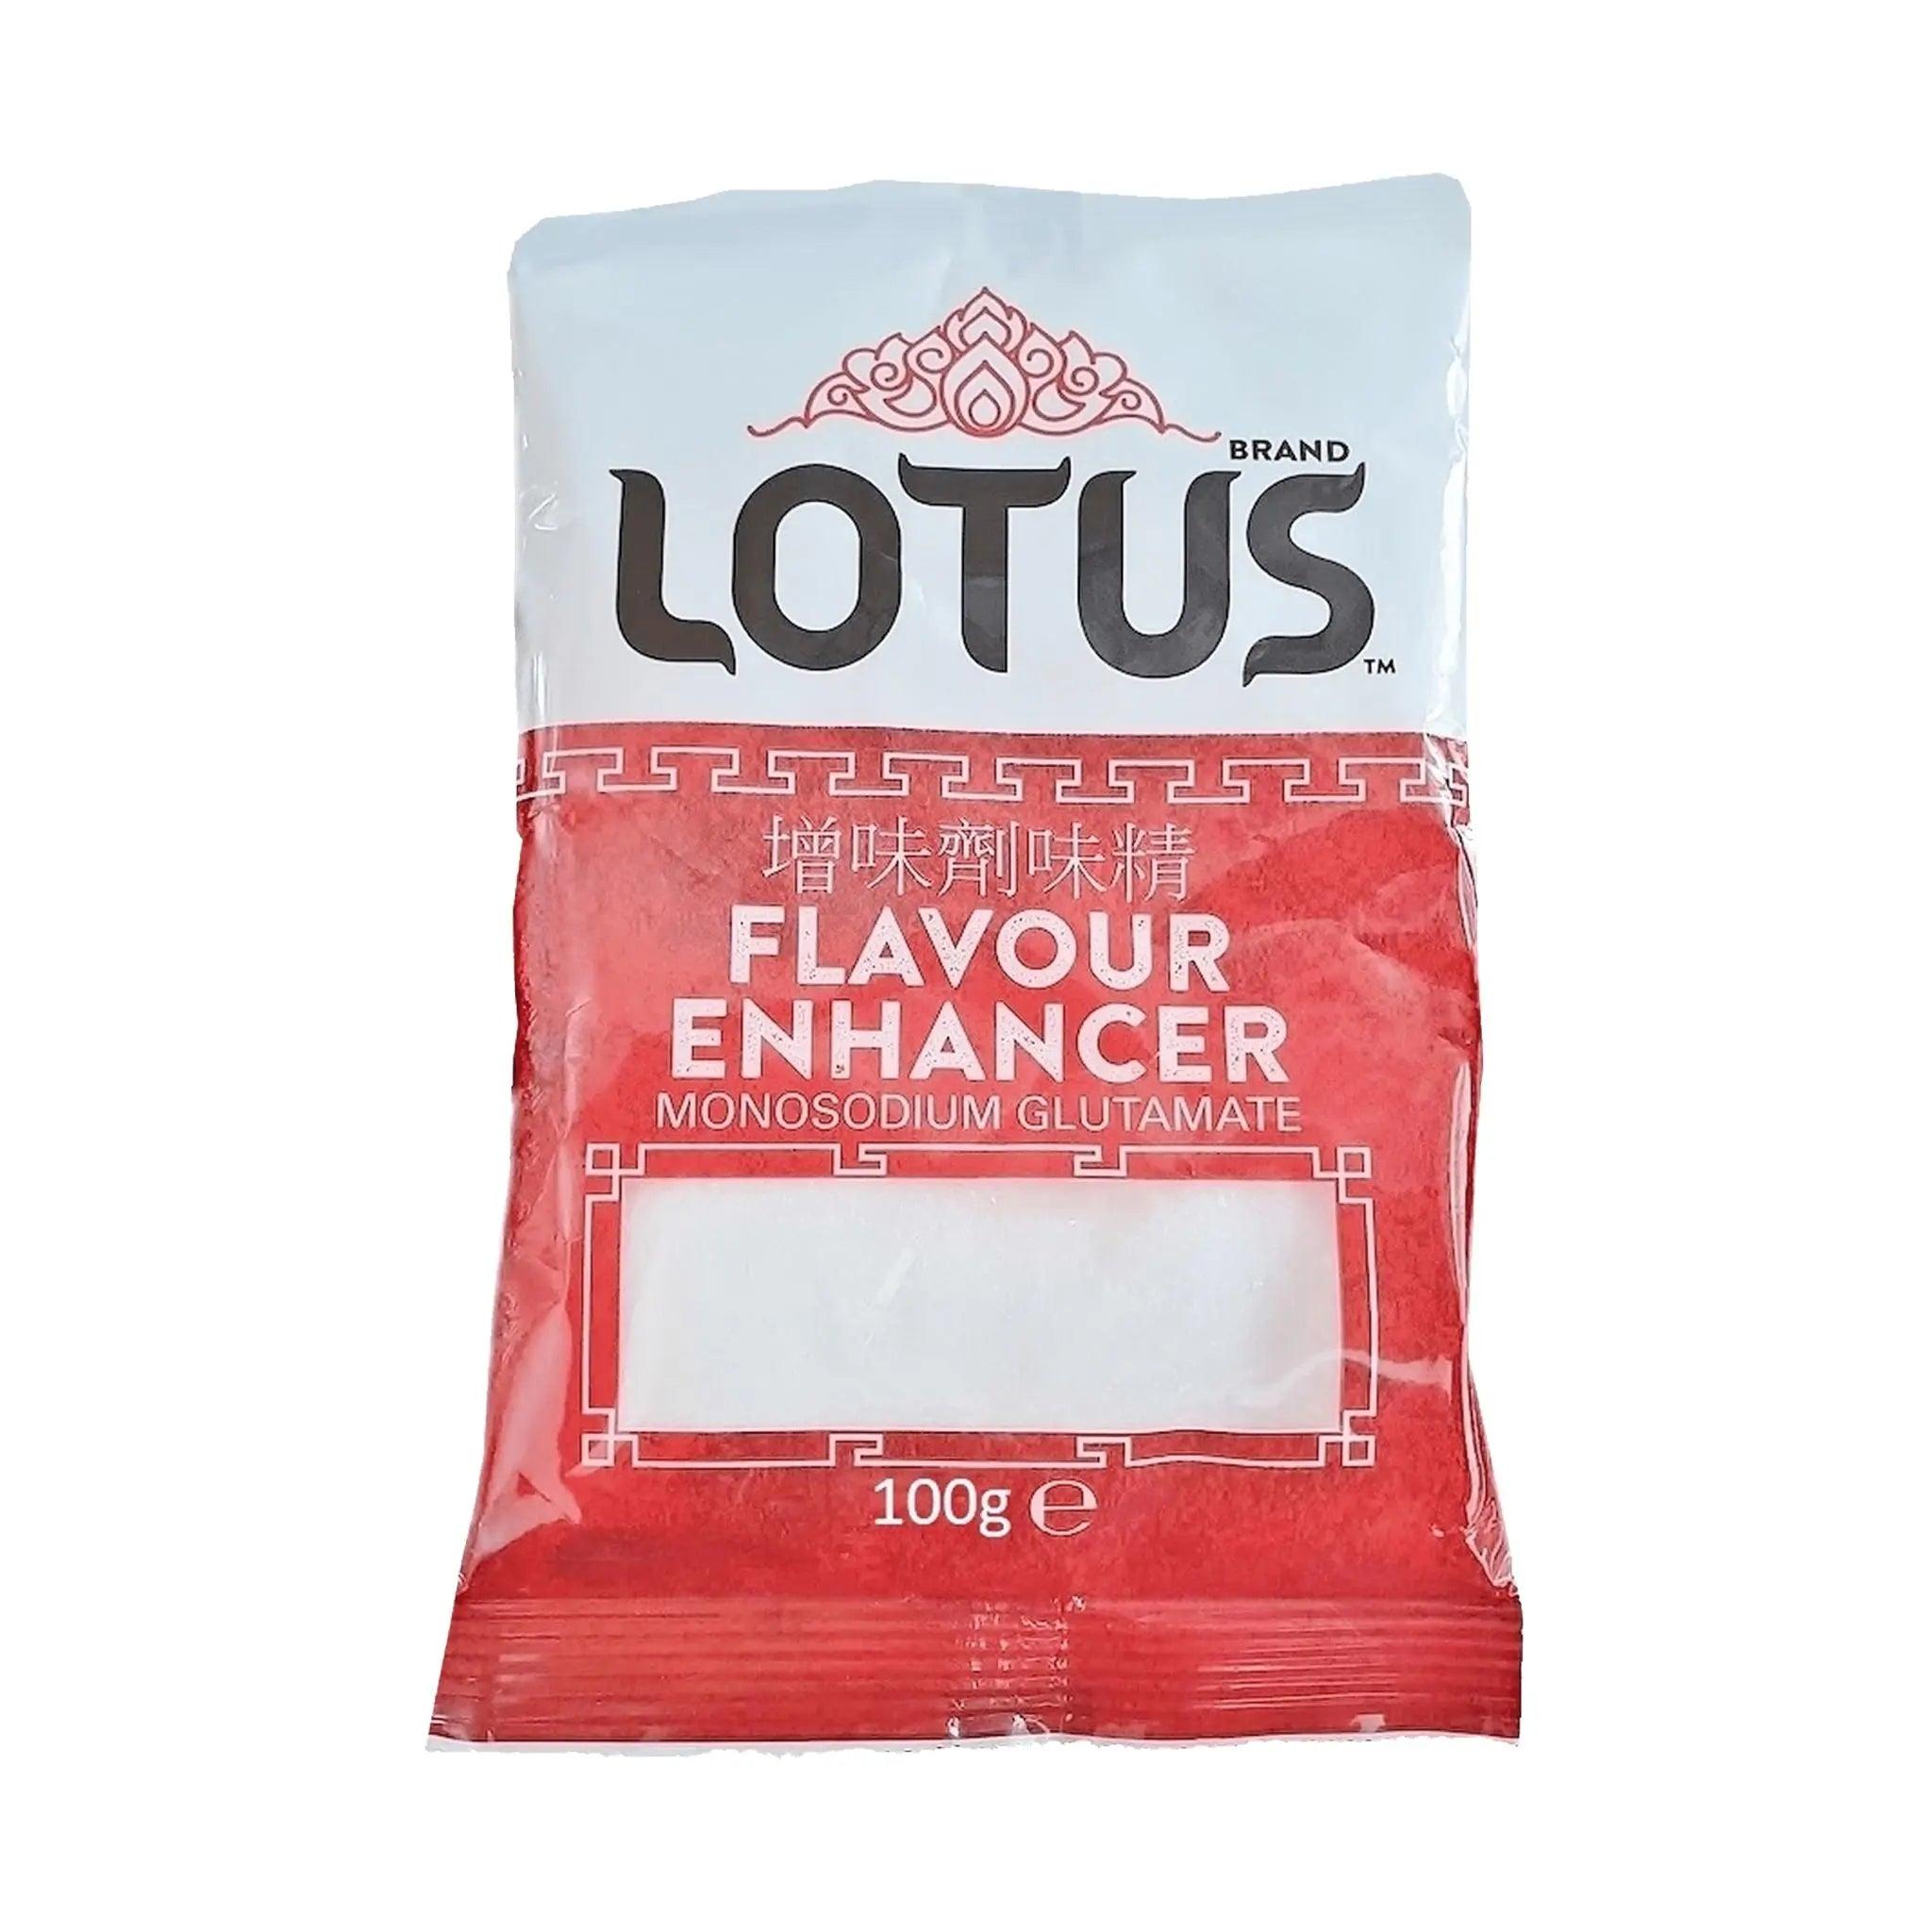 Lotus Flavour Enhancer Lotus